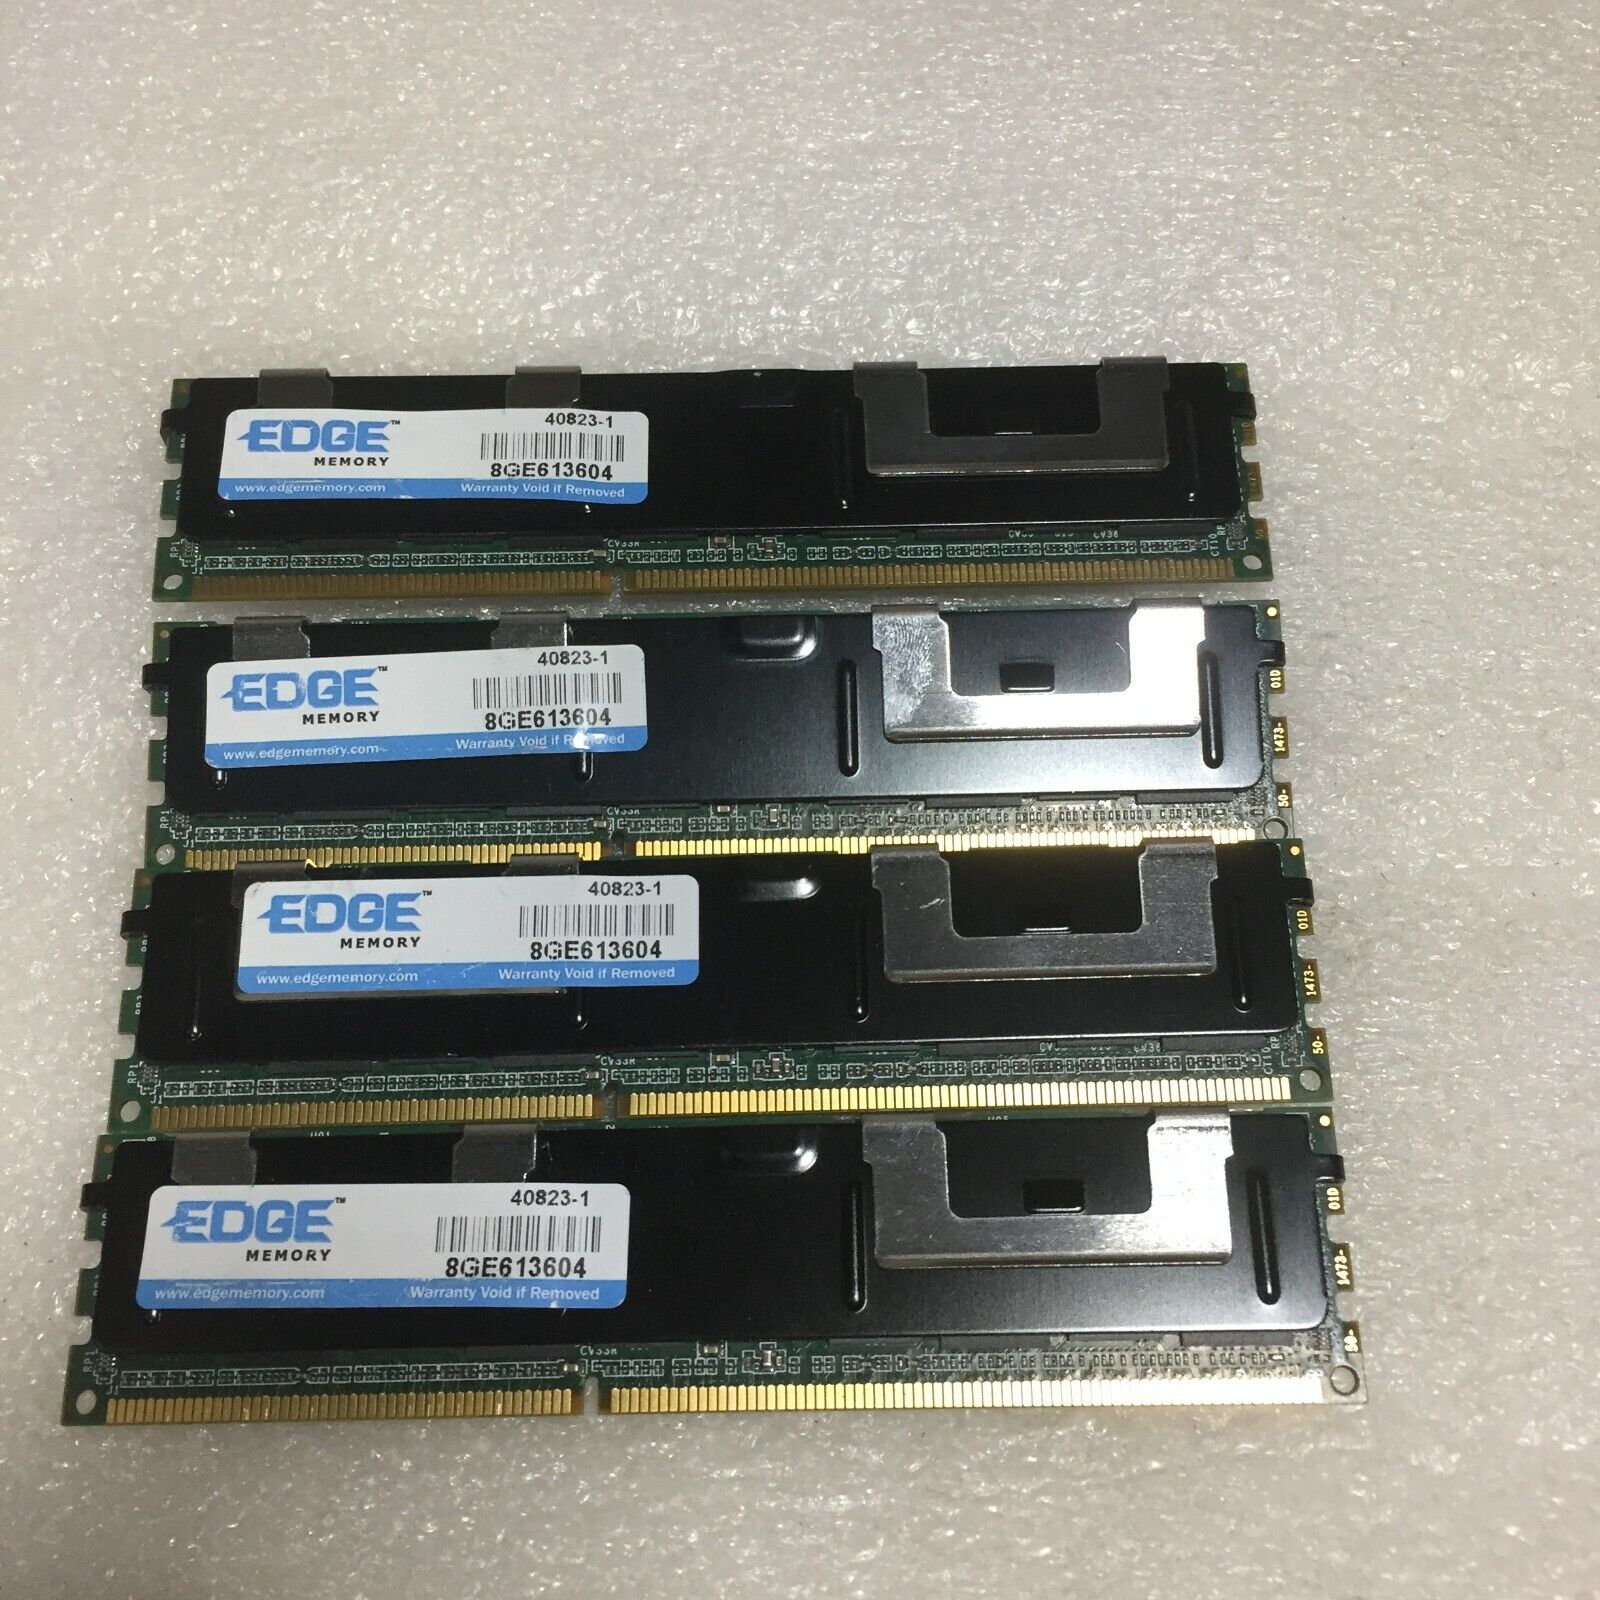 EDGE 8GE613604 - 32GB Kit (4x8GB) PC3L-10600R Server Memory RAM Free Shipping 